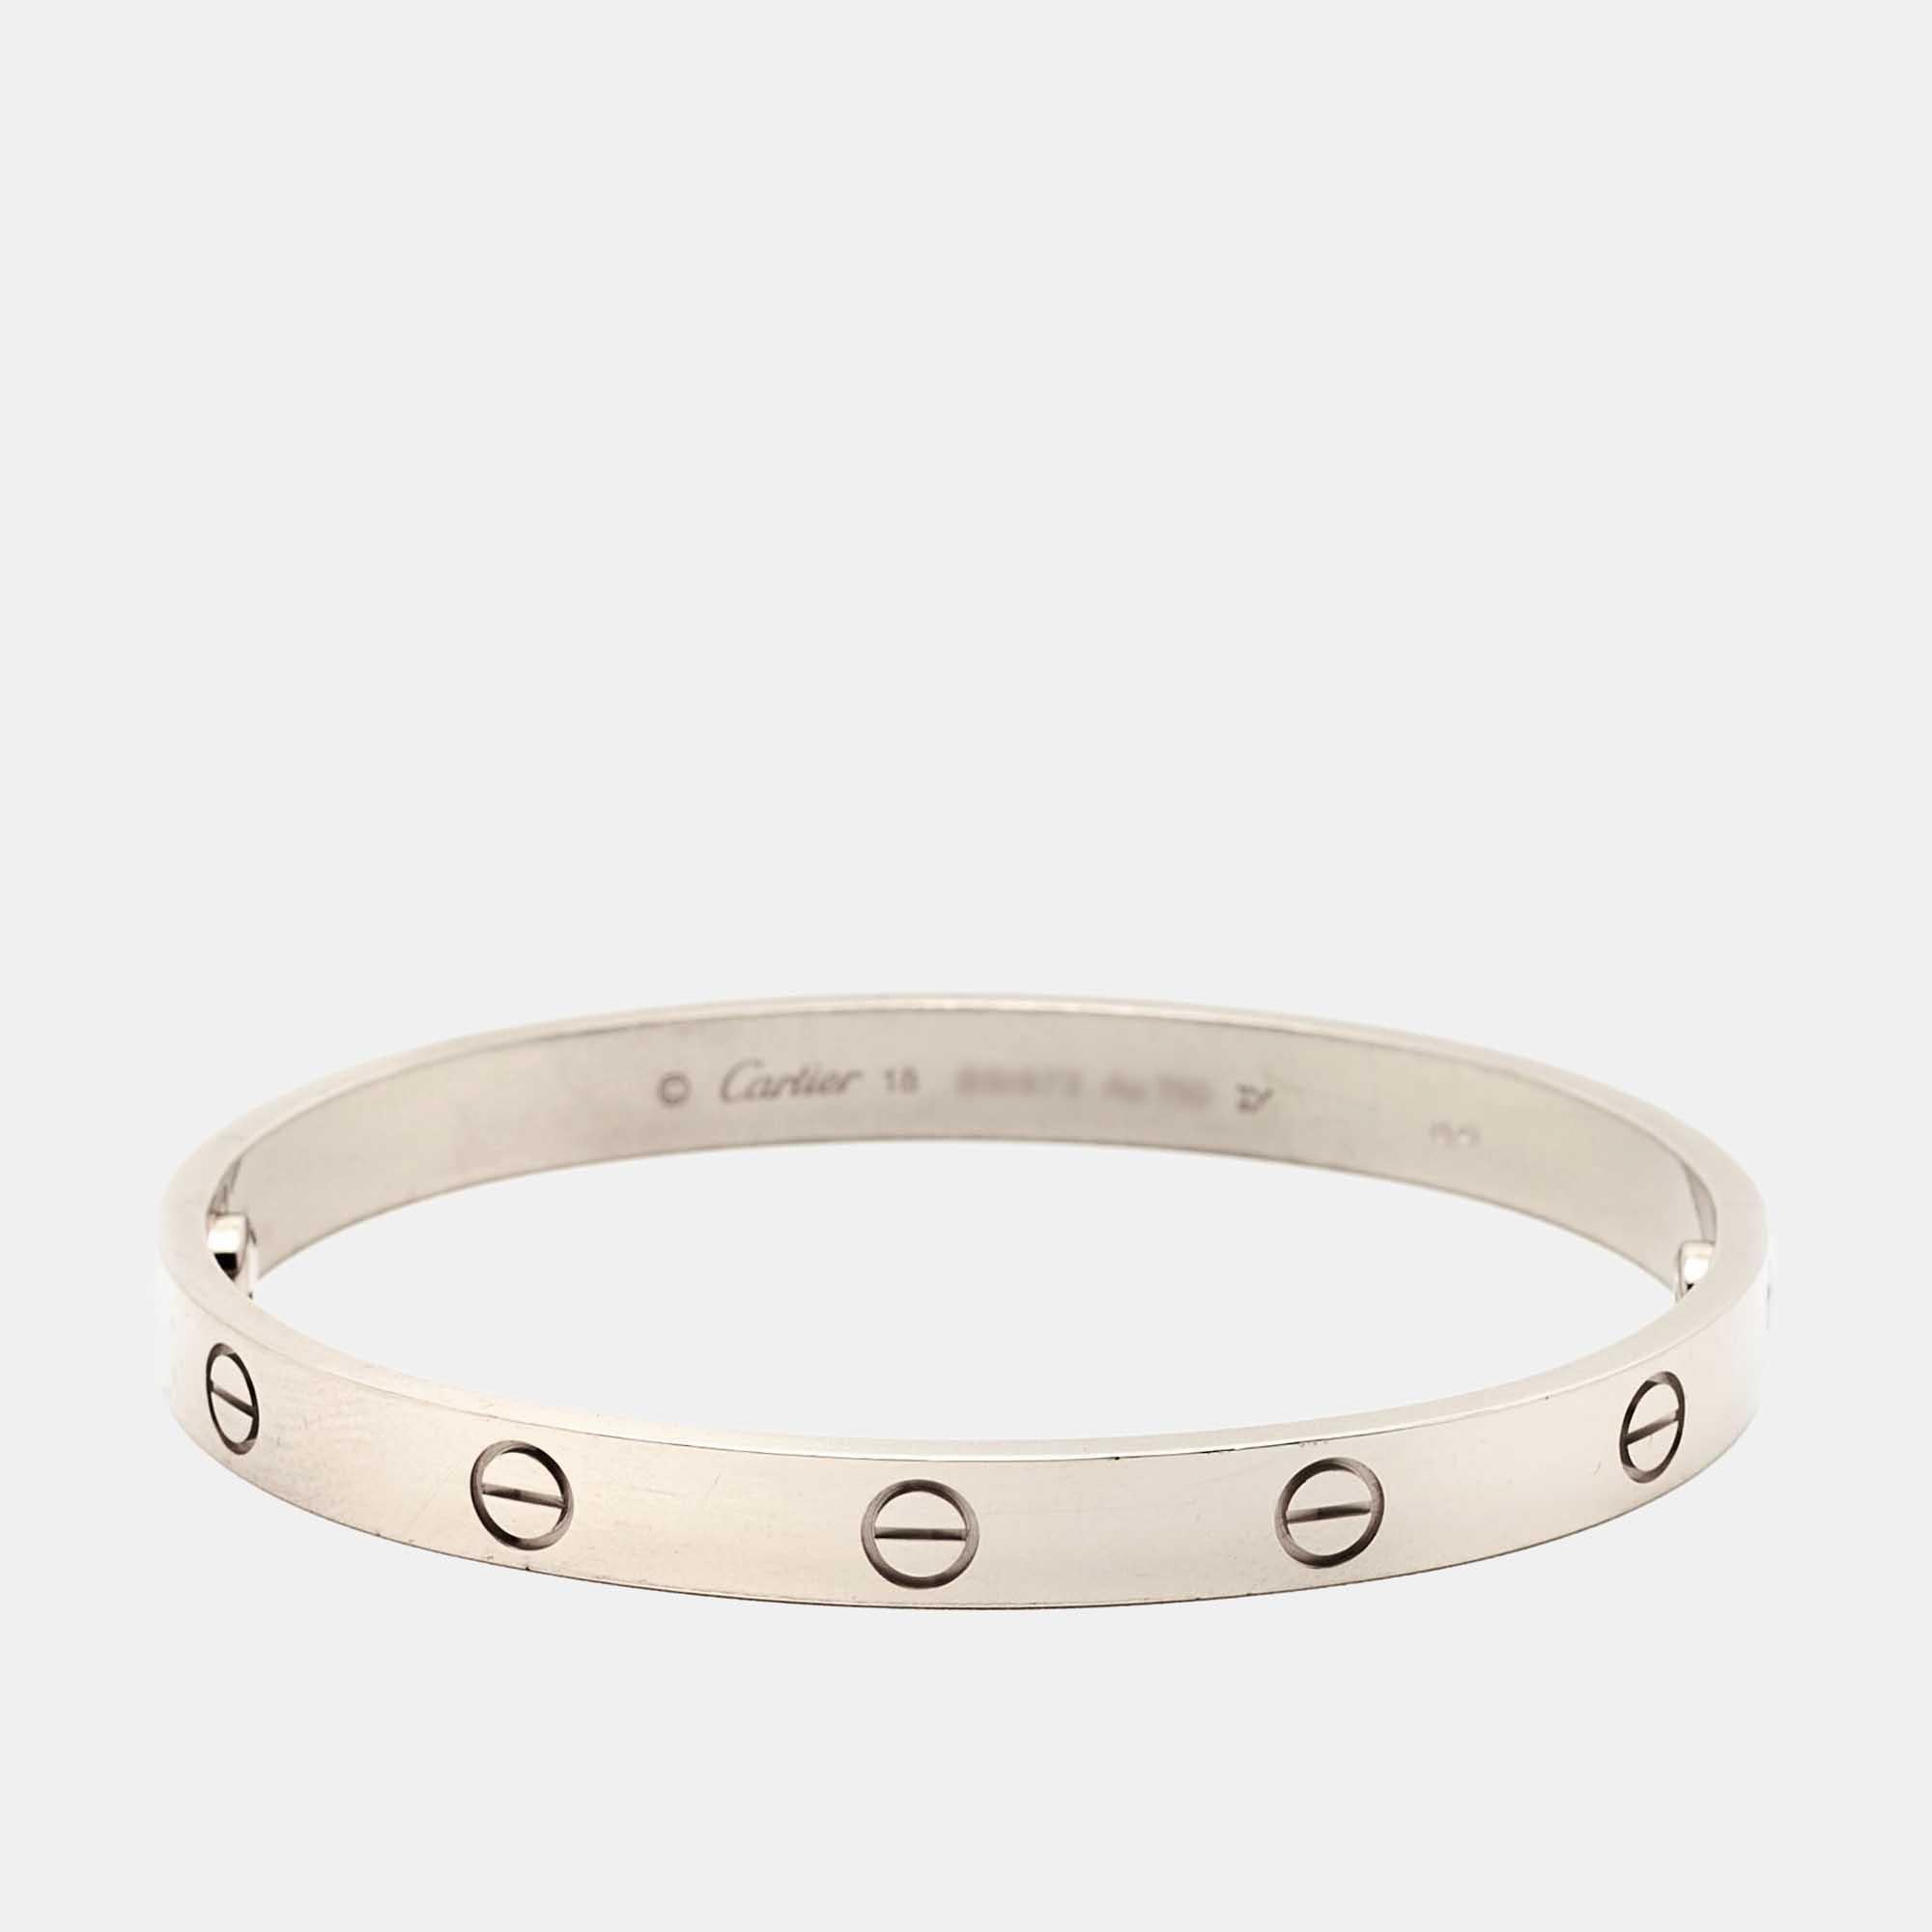 Le bracelet Love de Cartier est un symbole moderne de luxe et une façon d'enfermer son amour. Conçue dans une forme ovale pour s'adapter confortablement à votre poignet, l'emblématique menotte d'amour est ornée de motifs de vis distincts et